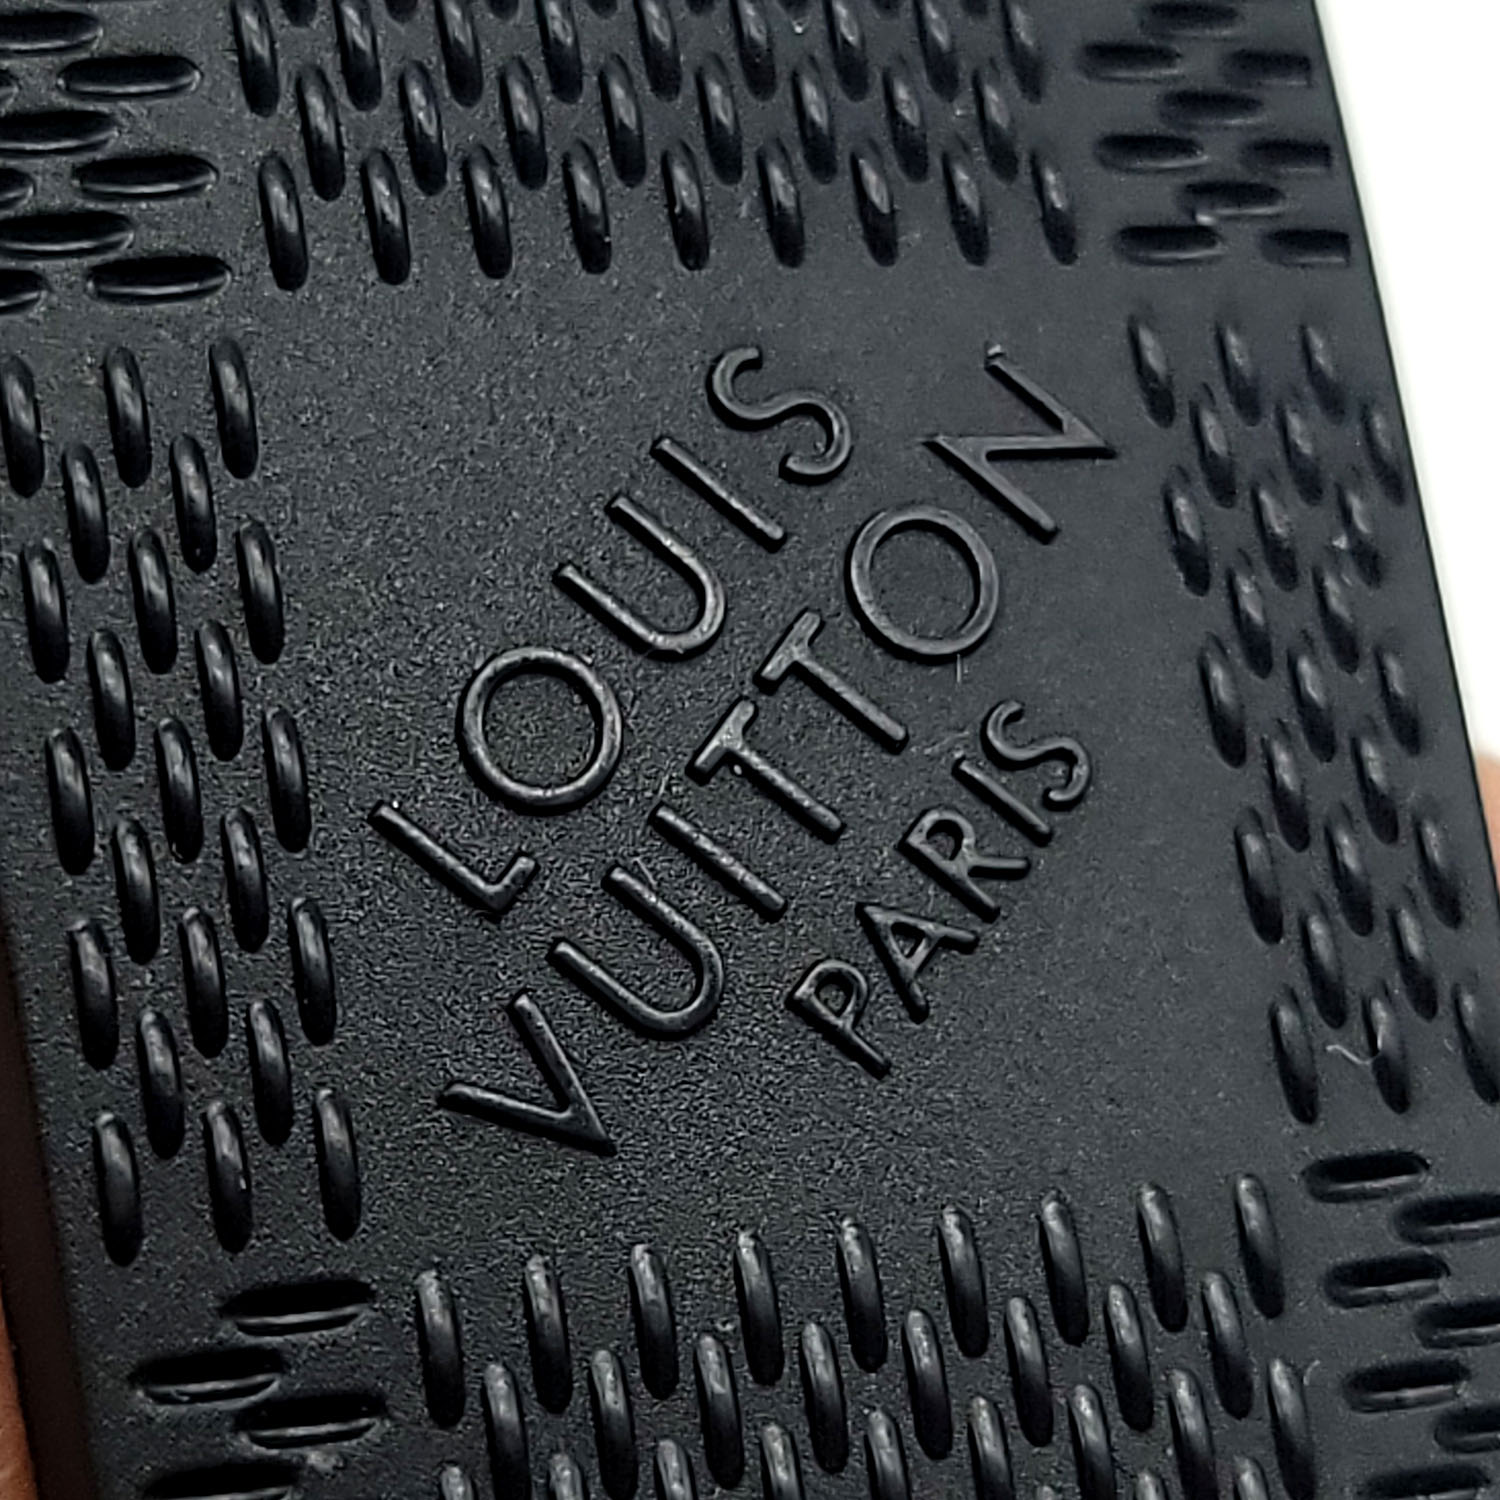 Louis Vuitton Tambour Horizon Matte Black – The Watch Pages